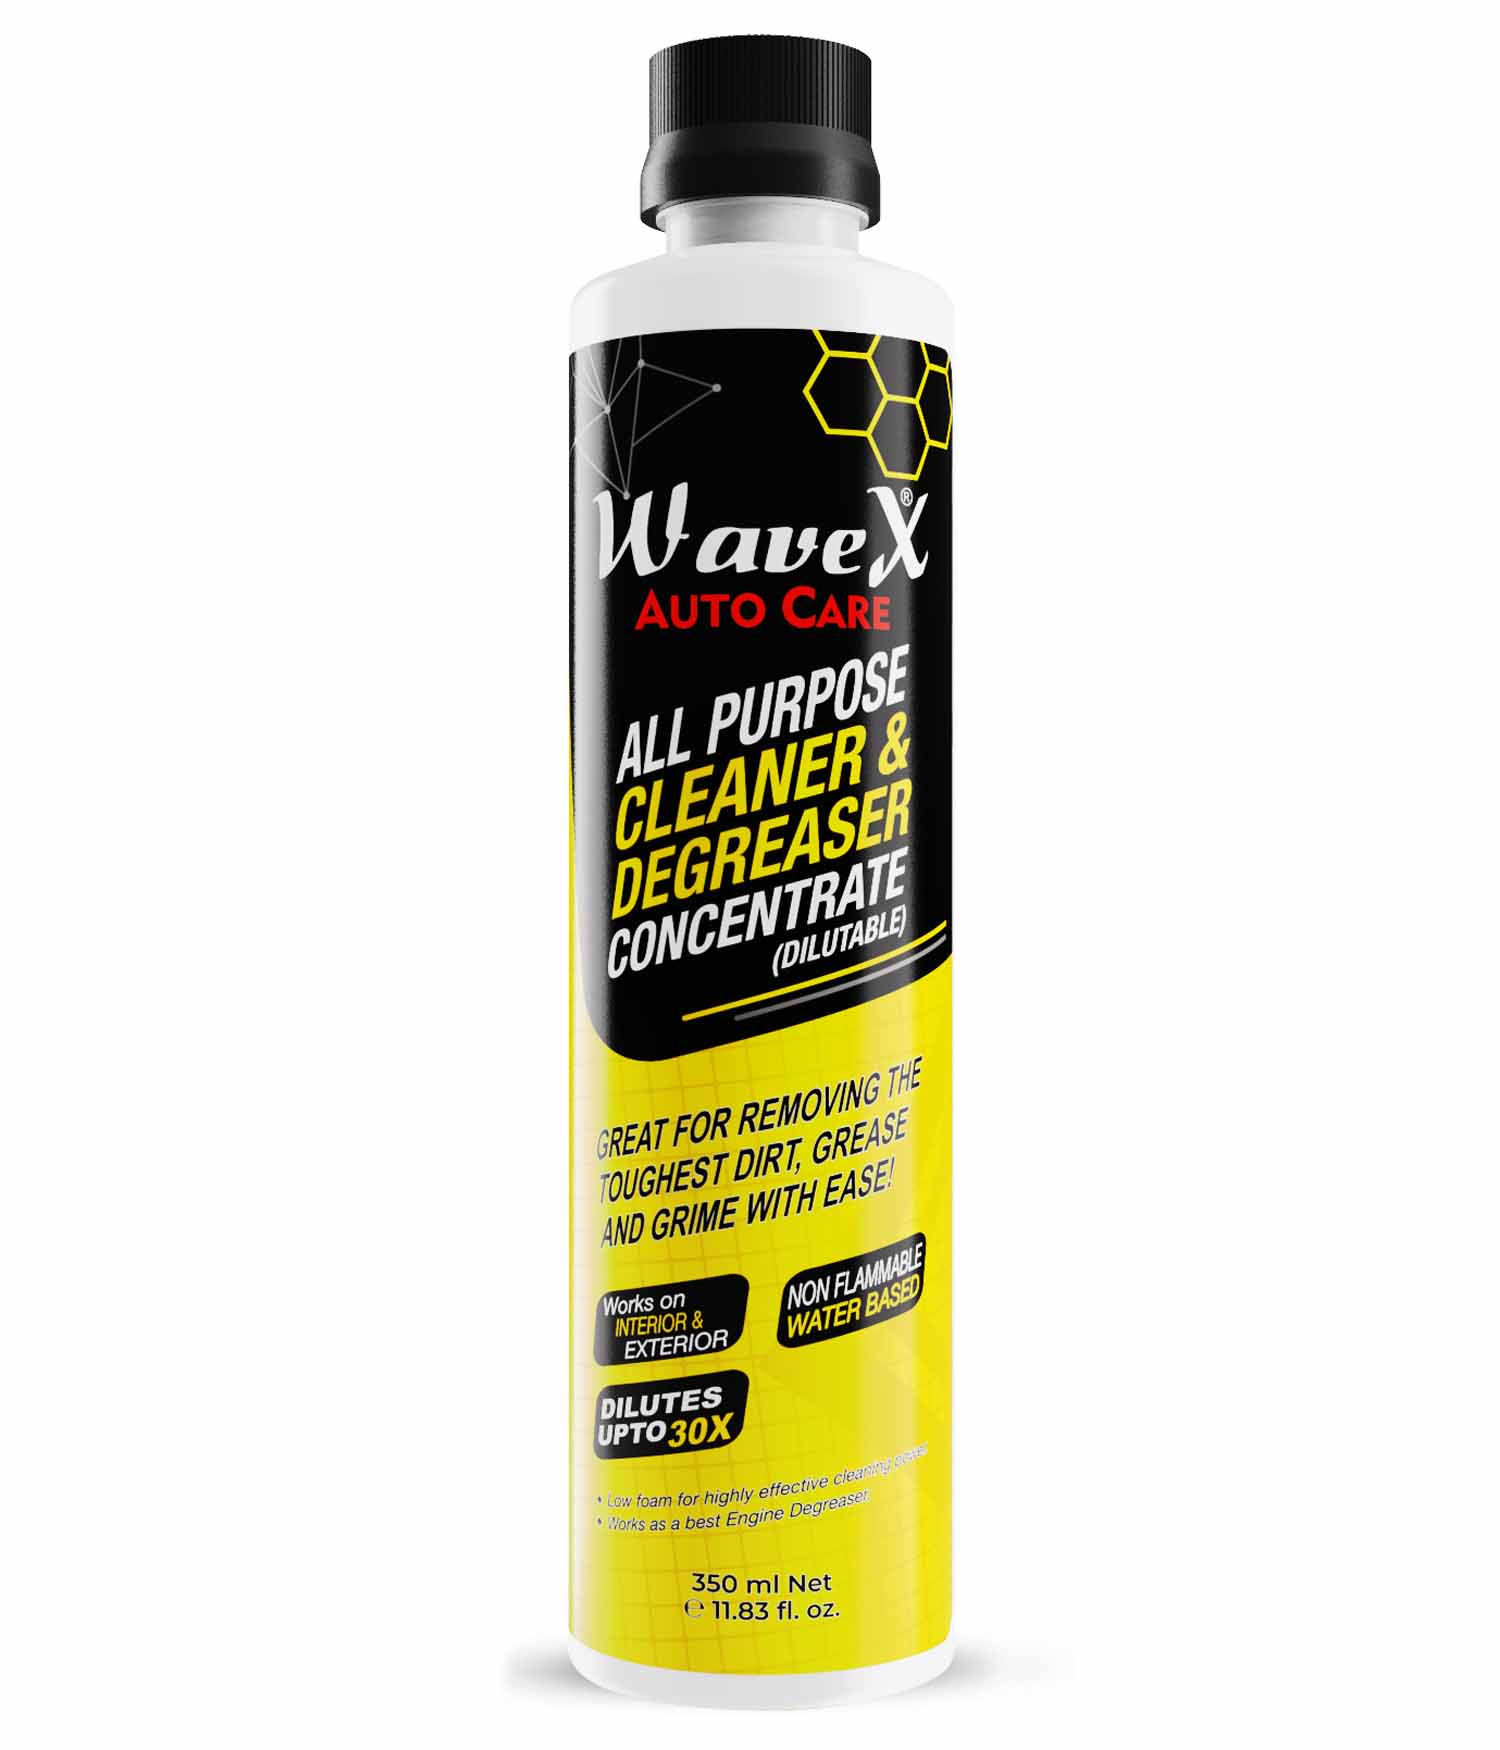 Max Pro 10-oz Liquid All-Purpose Cleaner in the All-Purpose